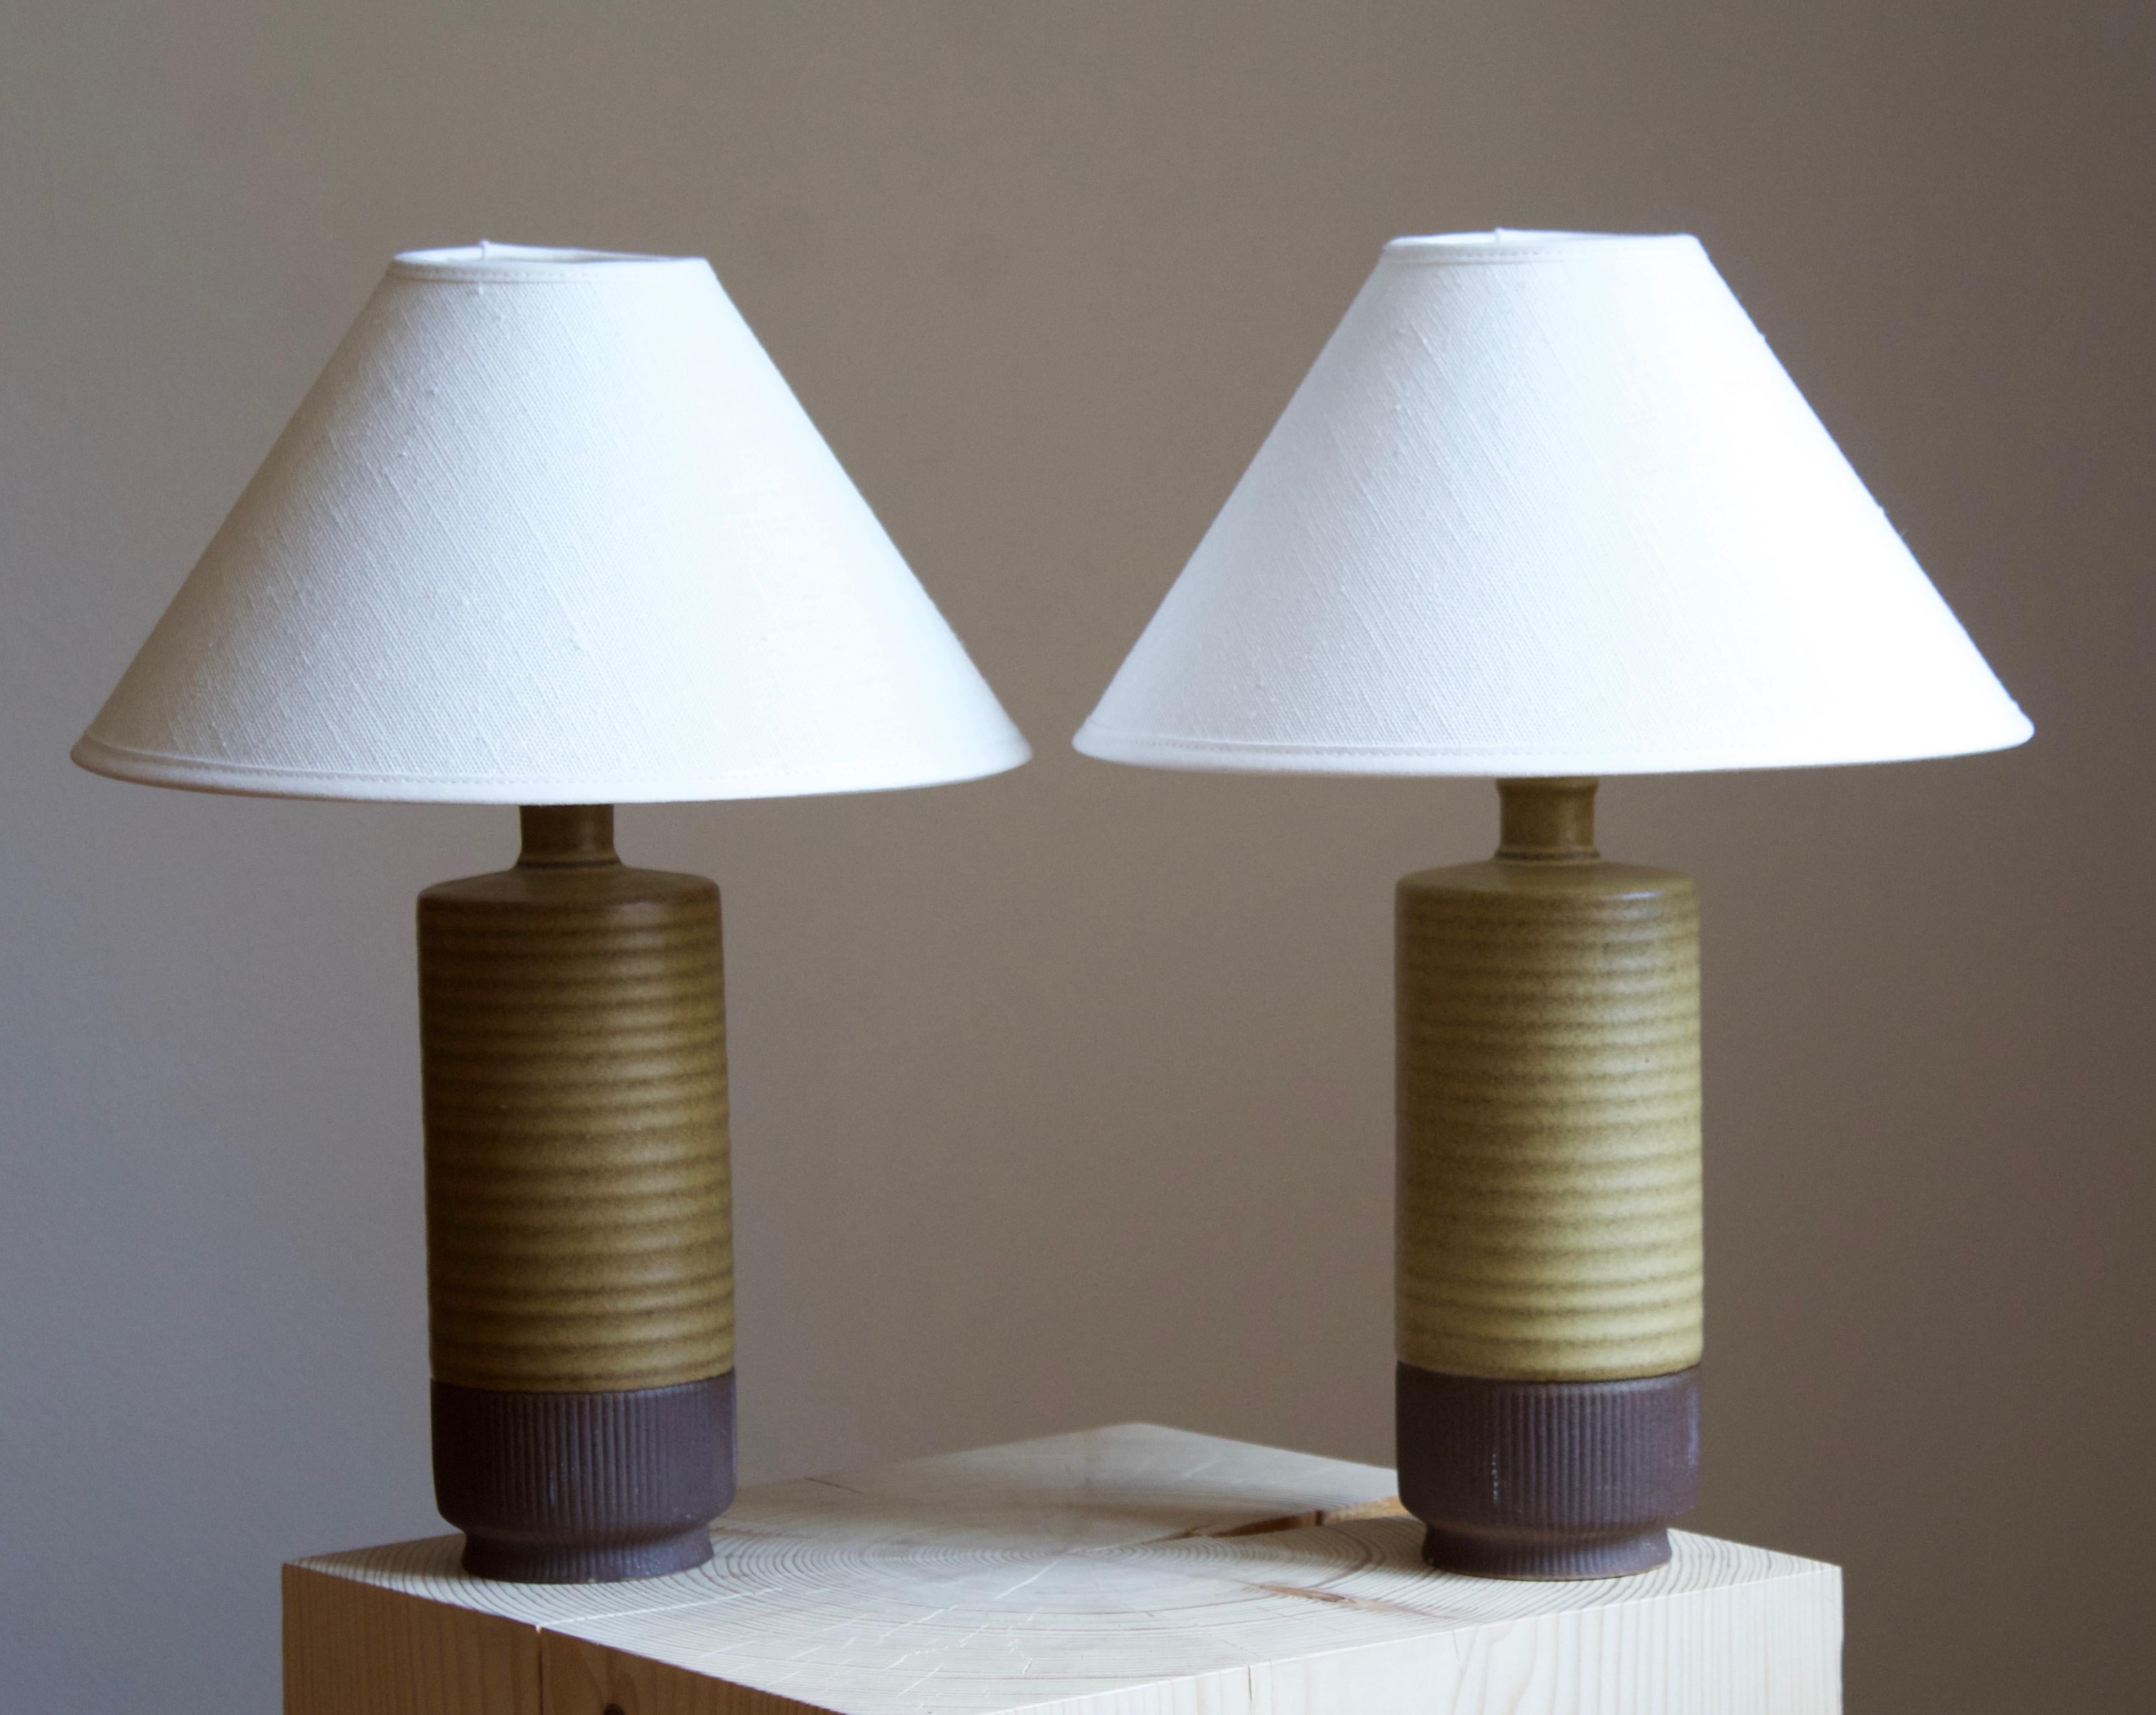 Une paire de lampes de table produites par Rörstrand, Suède, années 1950. Conçu par Gunnar Nylund, (suédois, 1914-1997). Signé. 

Vendu sans abat-jour. Les dimensions indiquées ne comprennent pas l'abat-jour, la hauteur comprend la douille.

Nylund